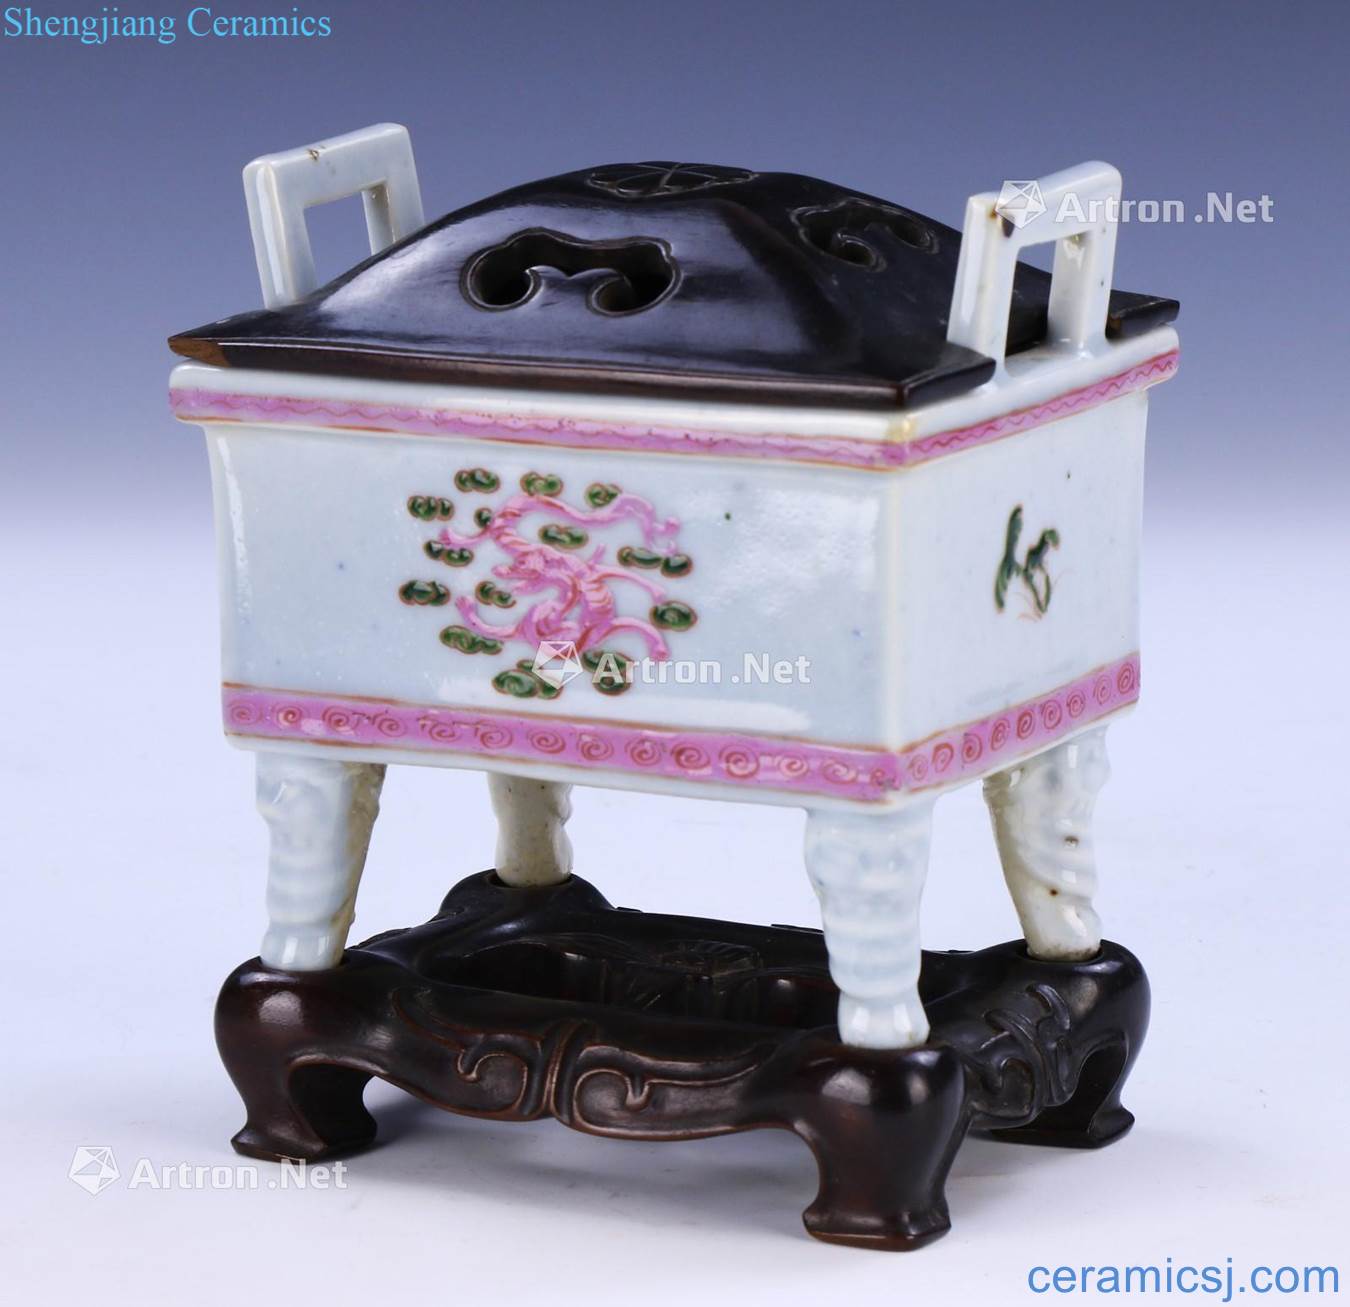 Qing dynasty porcelain enamel pot type incense burner